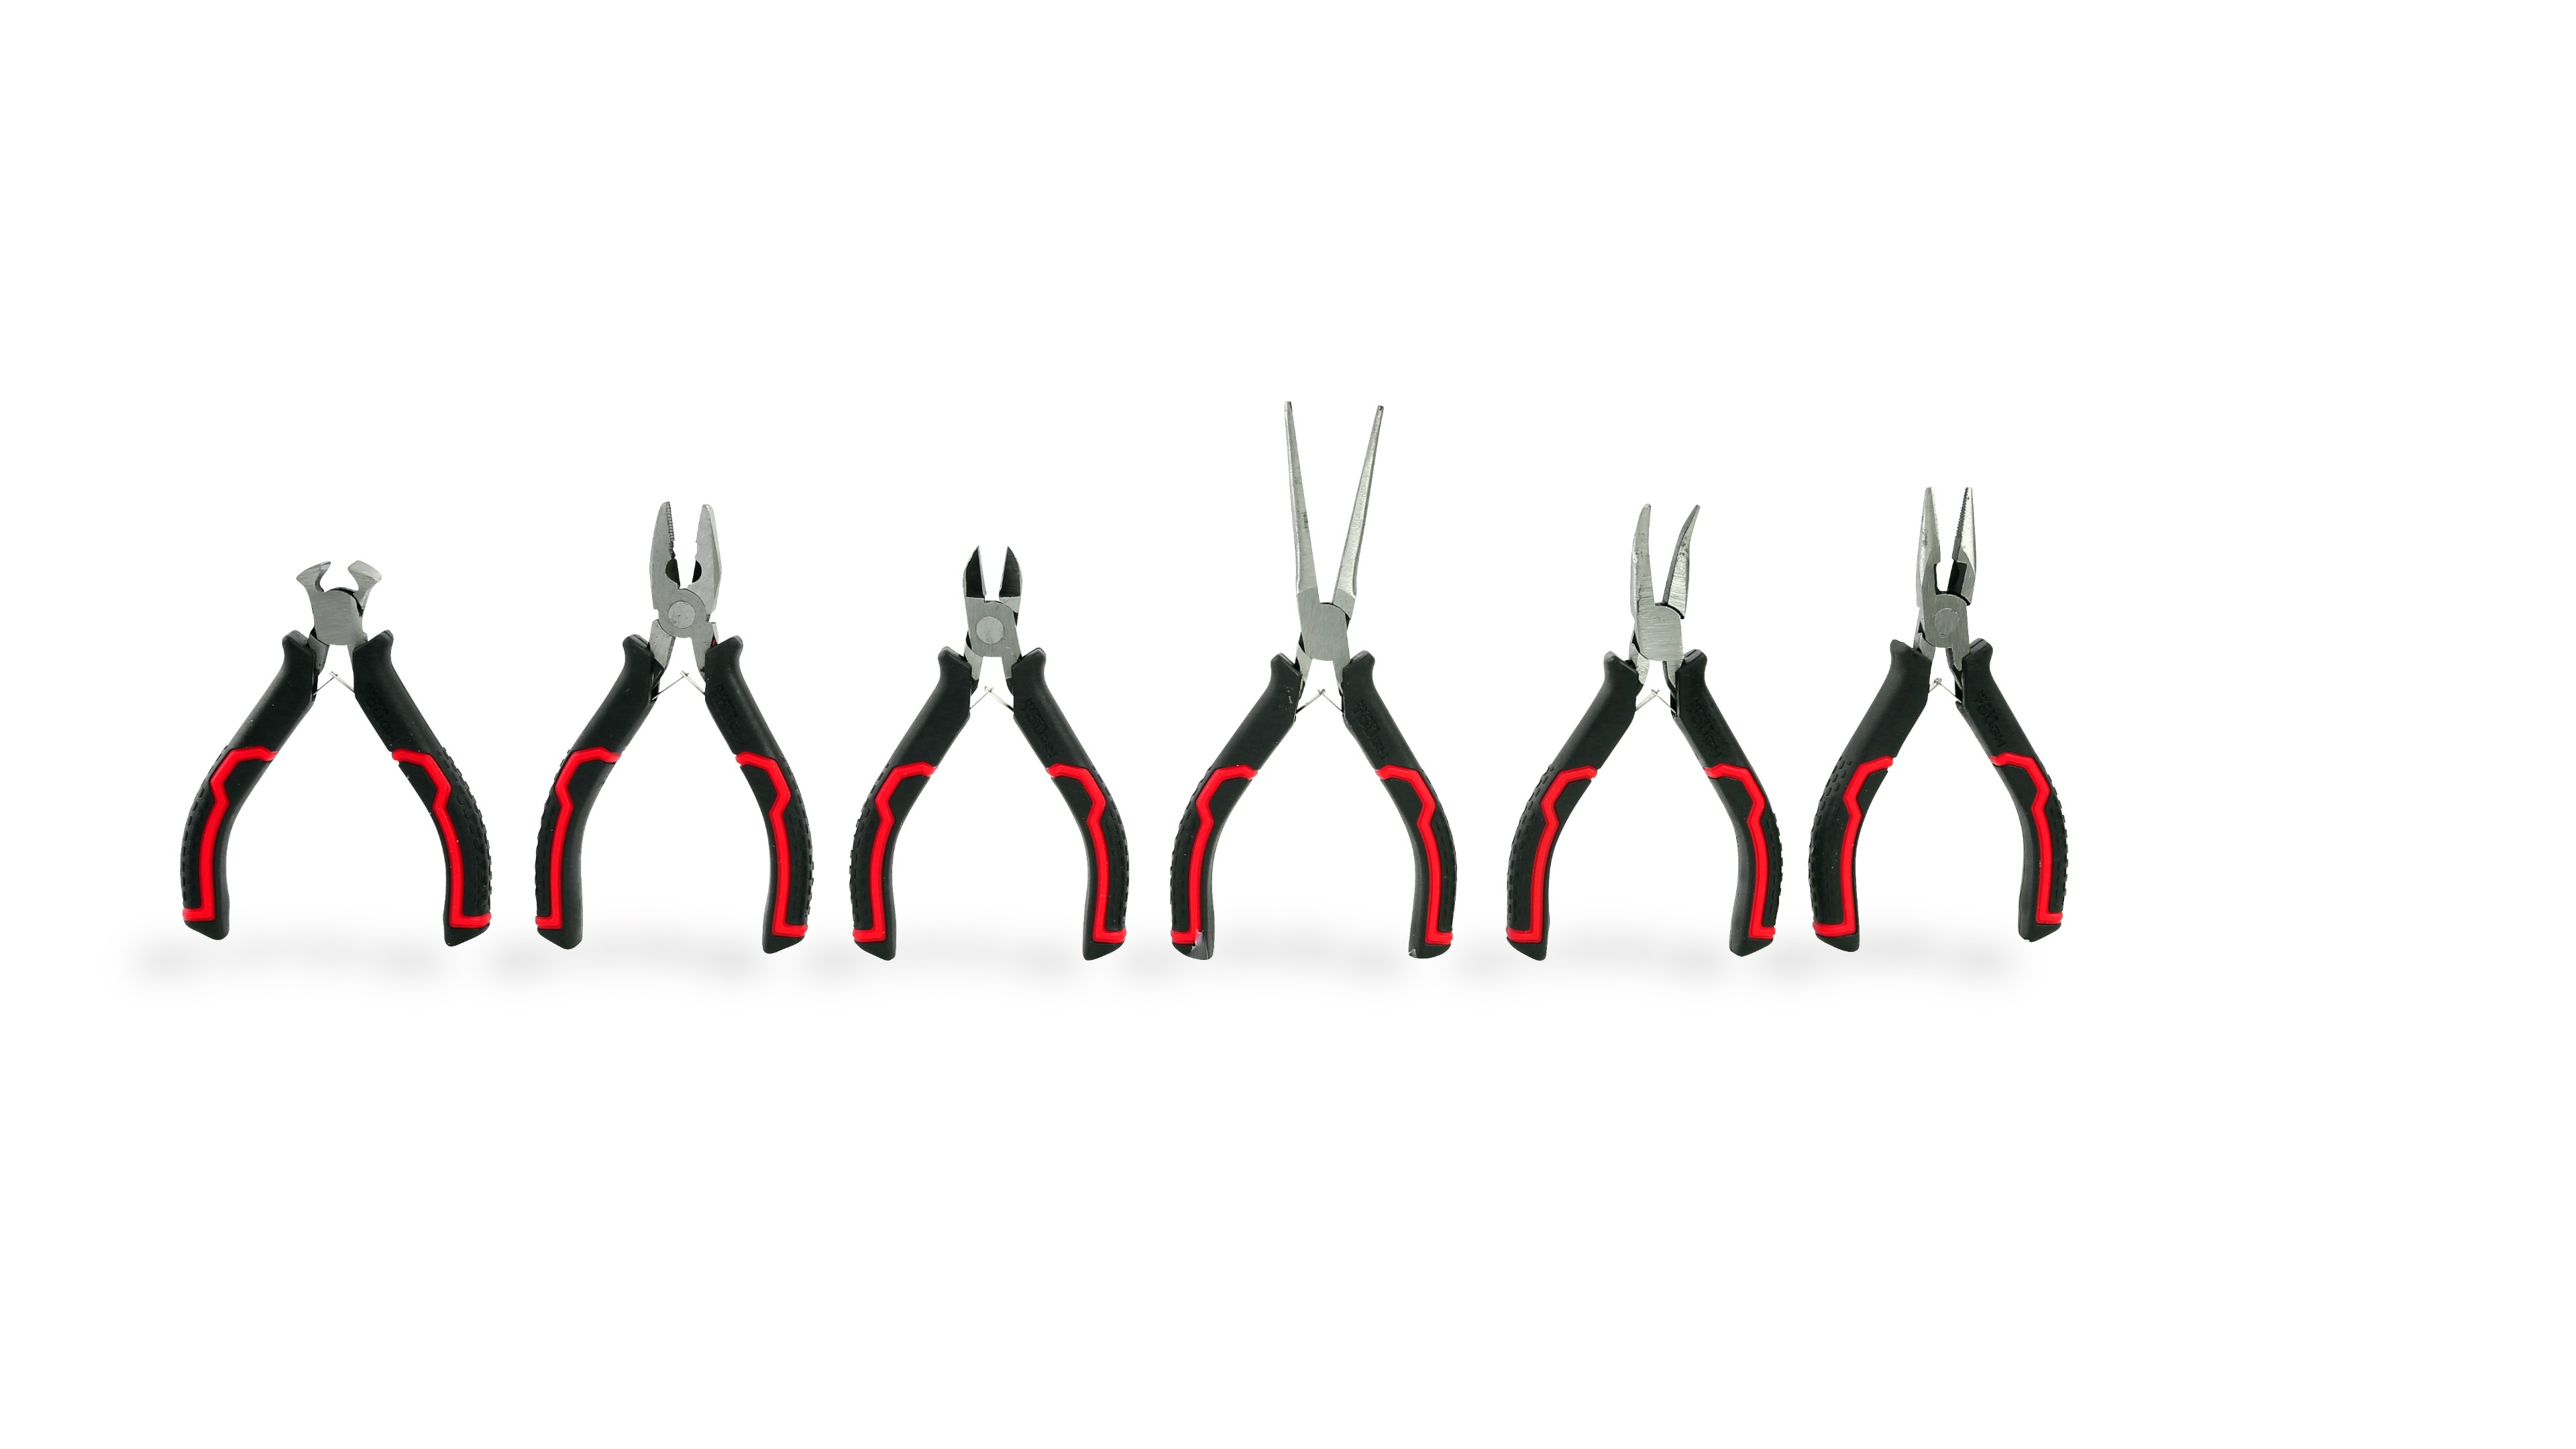 Hyper Tough 6-Piece Mini Pliers Set with Soft Grip Handles - NEW